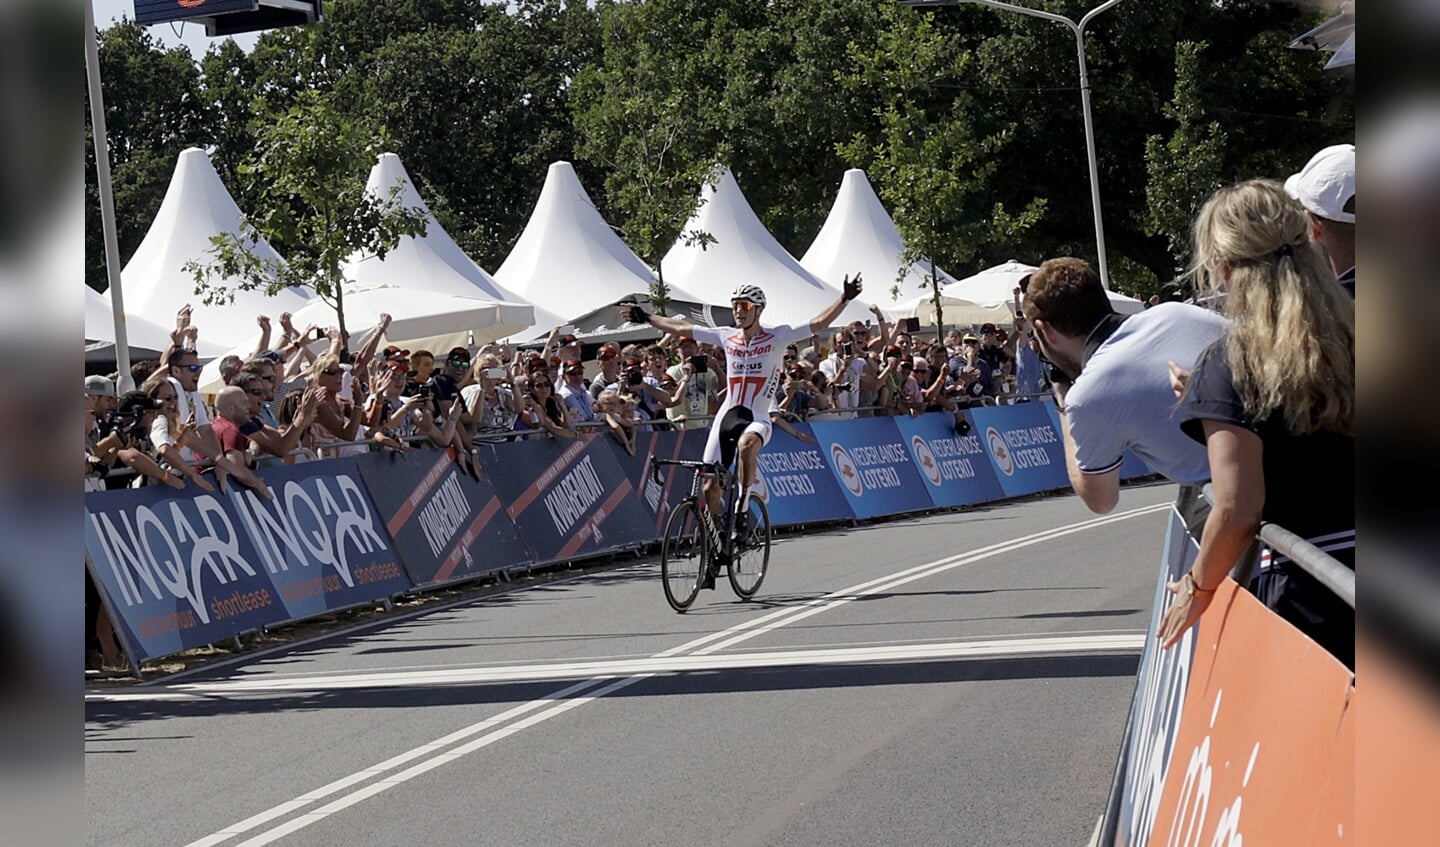 Het NK wielrennen bij de Mannen Elite is gewonnen door Mathieu van der Poel.